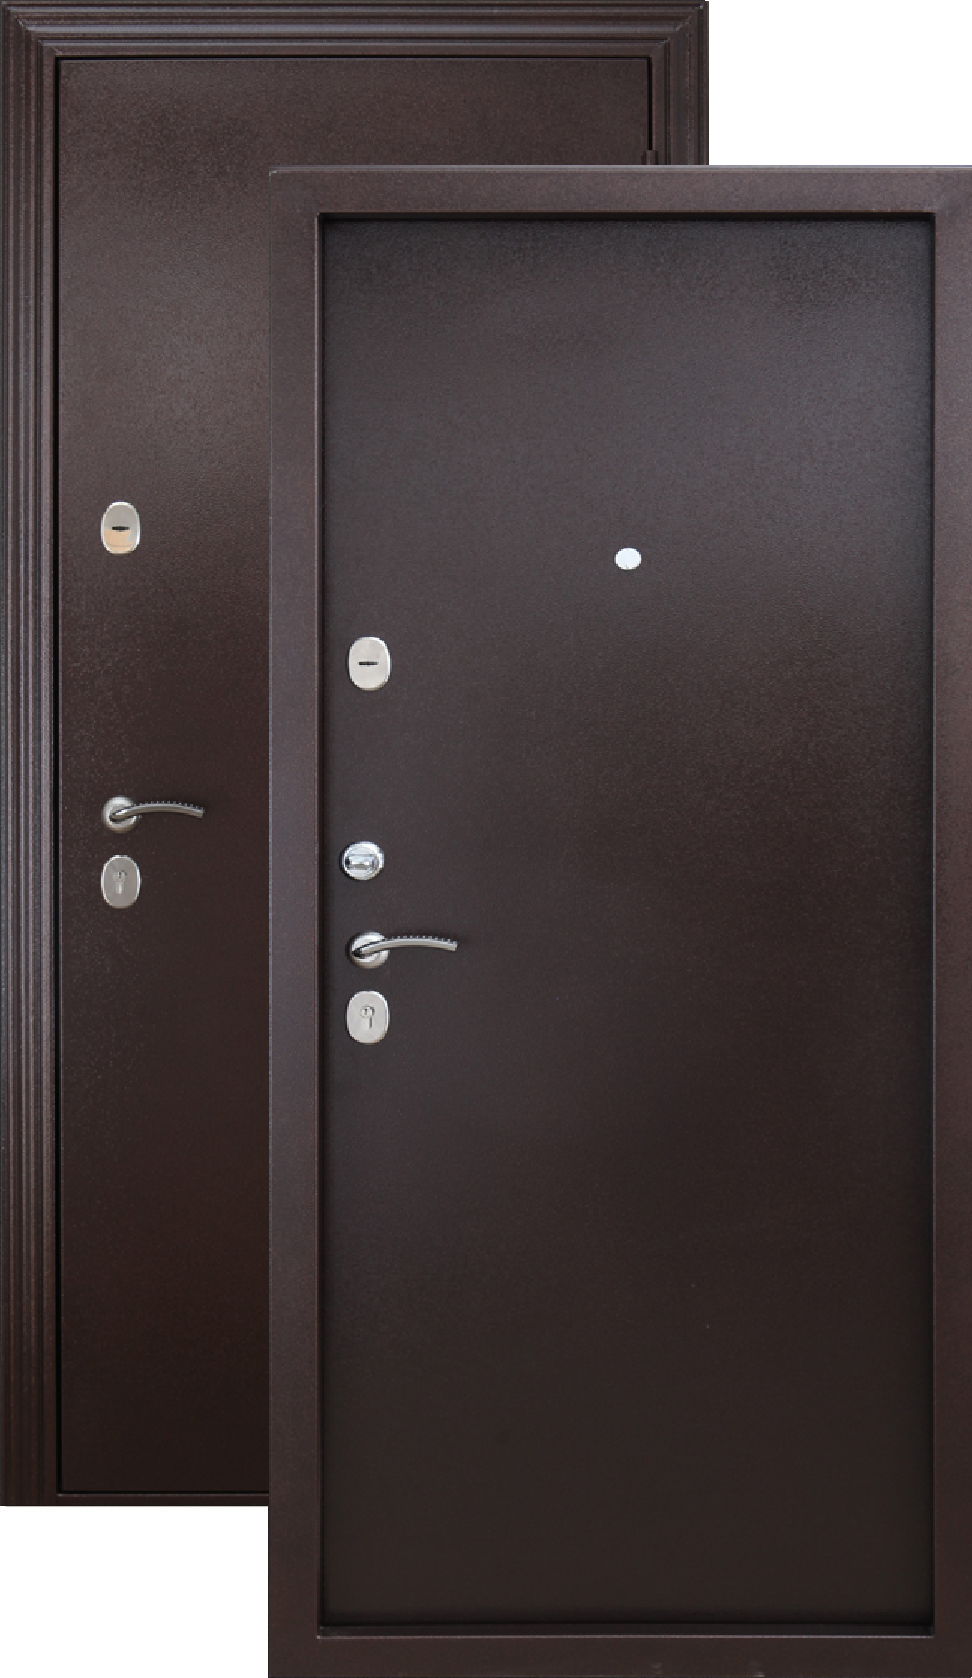 Дверь входная Гарда медный антик. Дверь Гарда металл/металл медный антик. Дверь металлическая 7,5см Гарда 960х2050мм металл/металл левая. Дверь металл Isoterma медный антик.